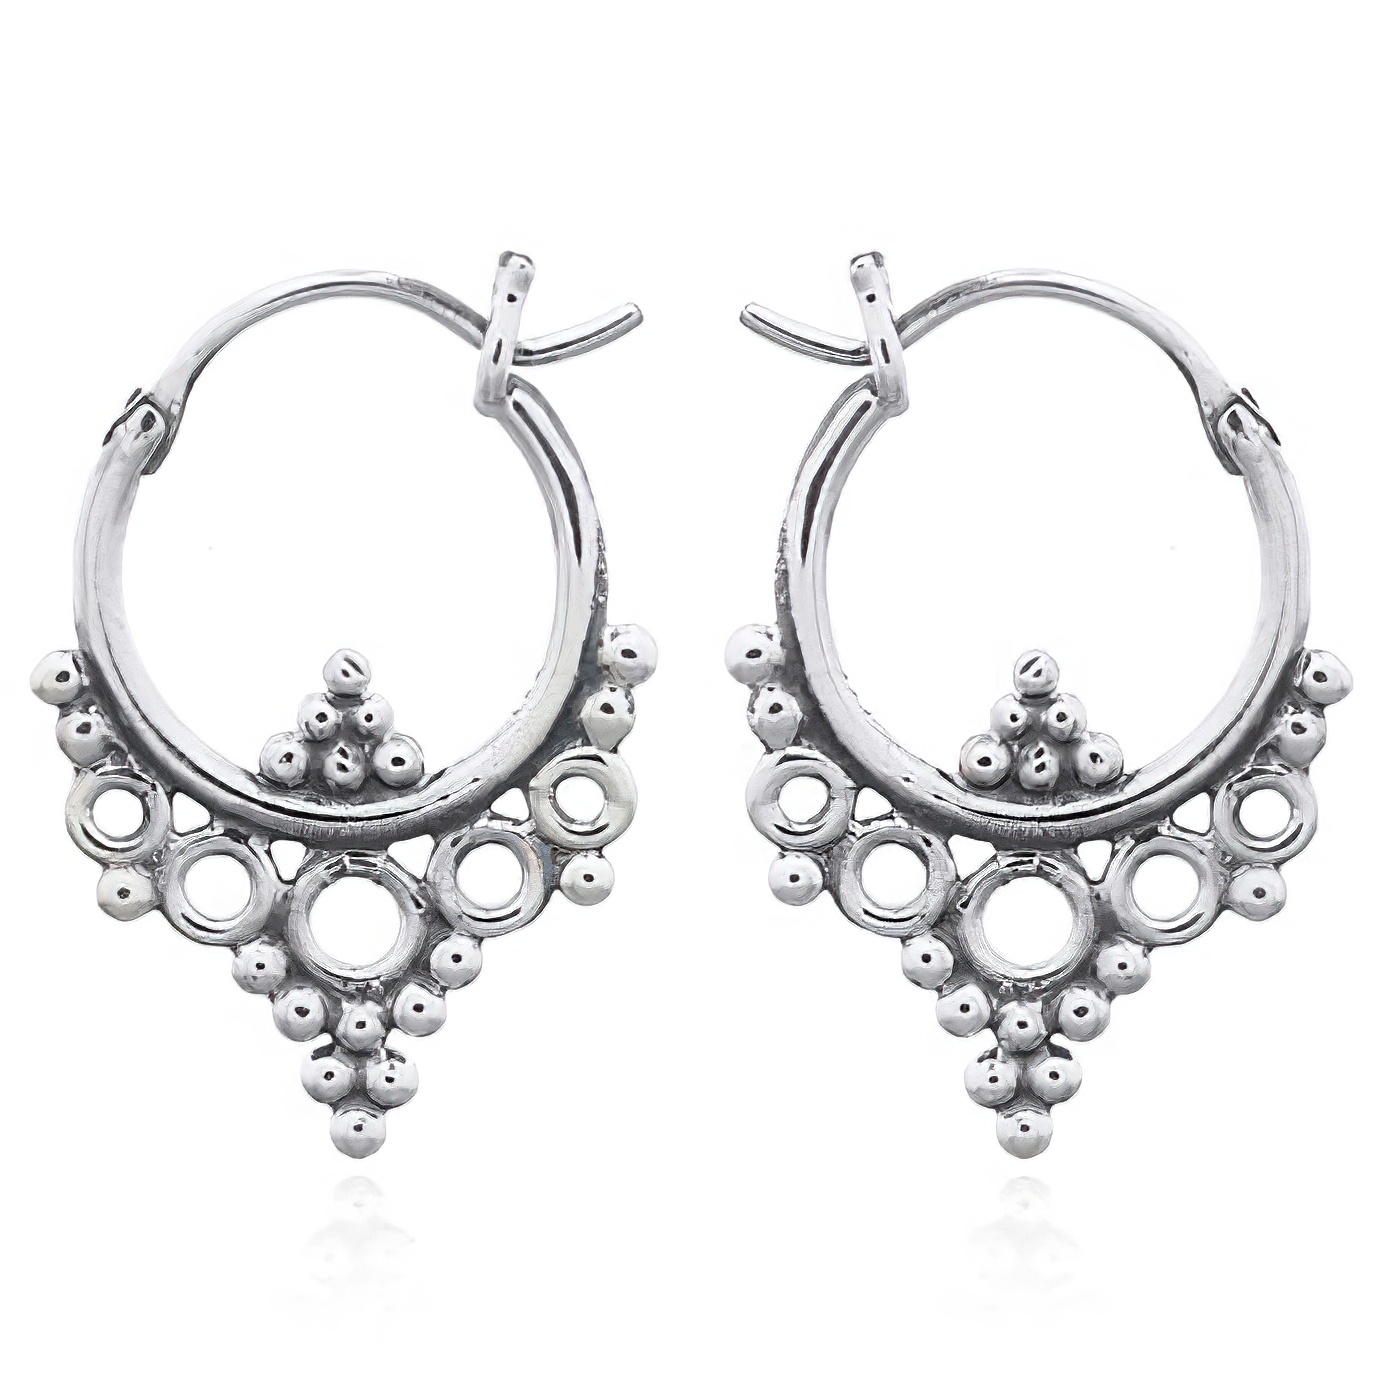 Ethnic Style Boho Earrings Hoop 925 Silver by BeYindi 